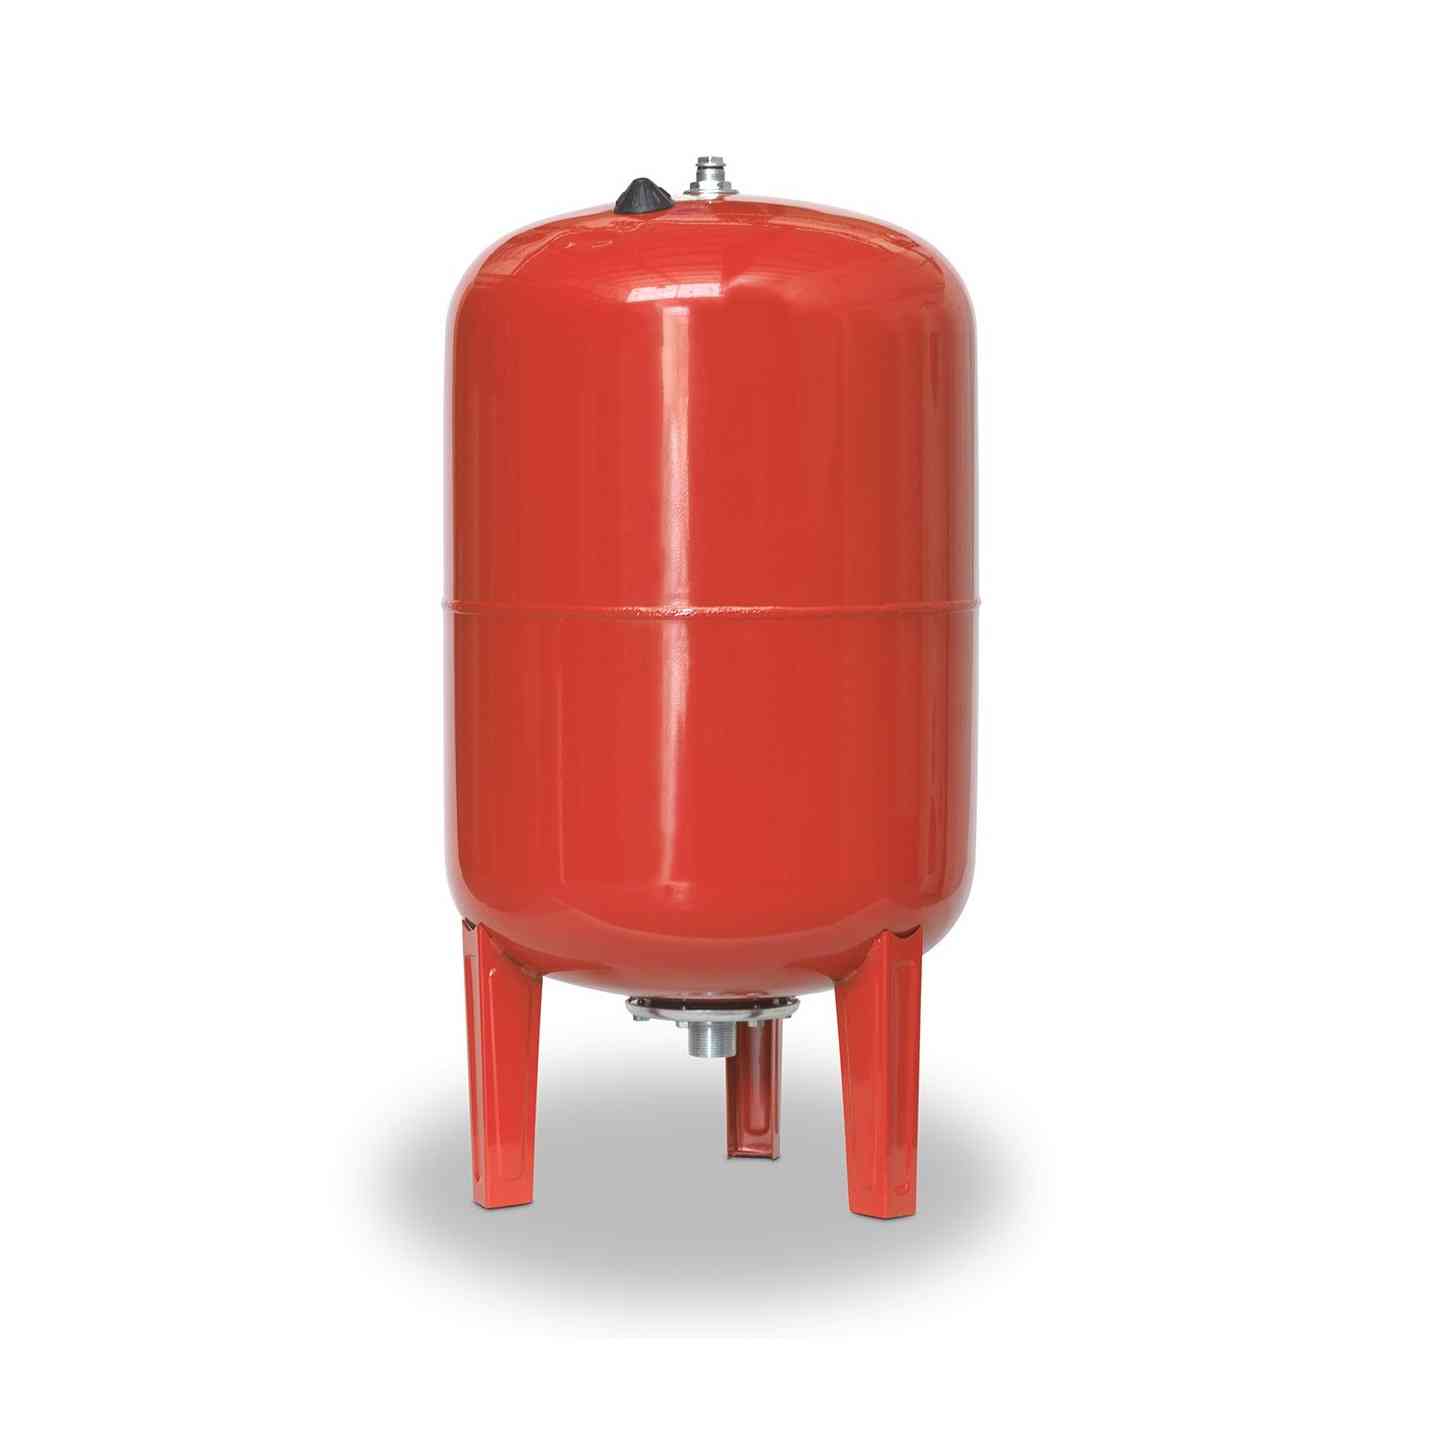 Accumulateur hydropneumatique sur pieds 150 AMR-B90 150 litres diamètre 485mm raccord 1 1/4" avec la référence 03150801 de la marque IBAIONDO